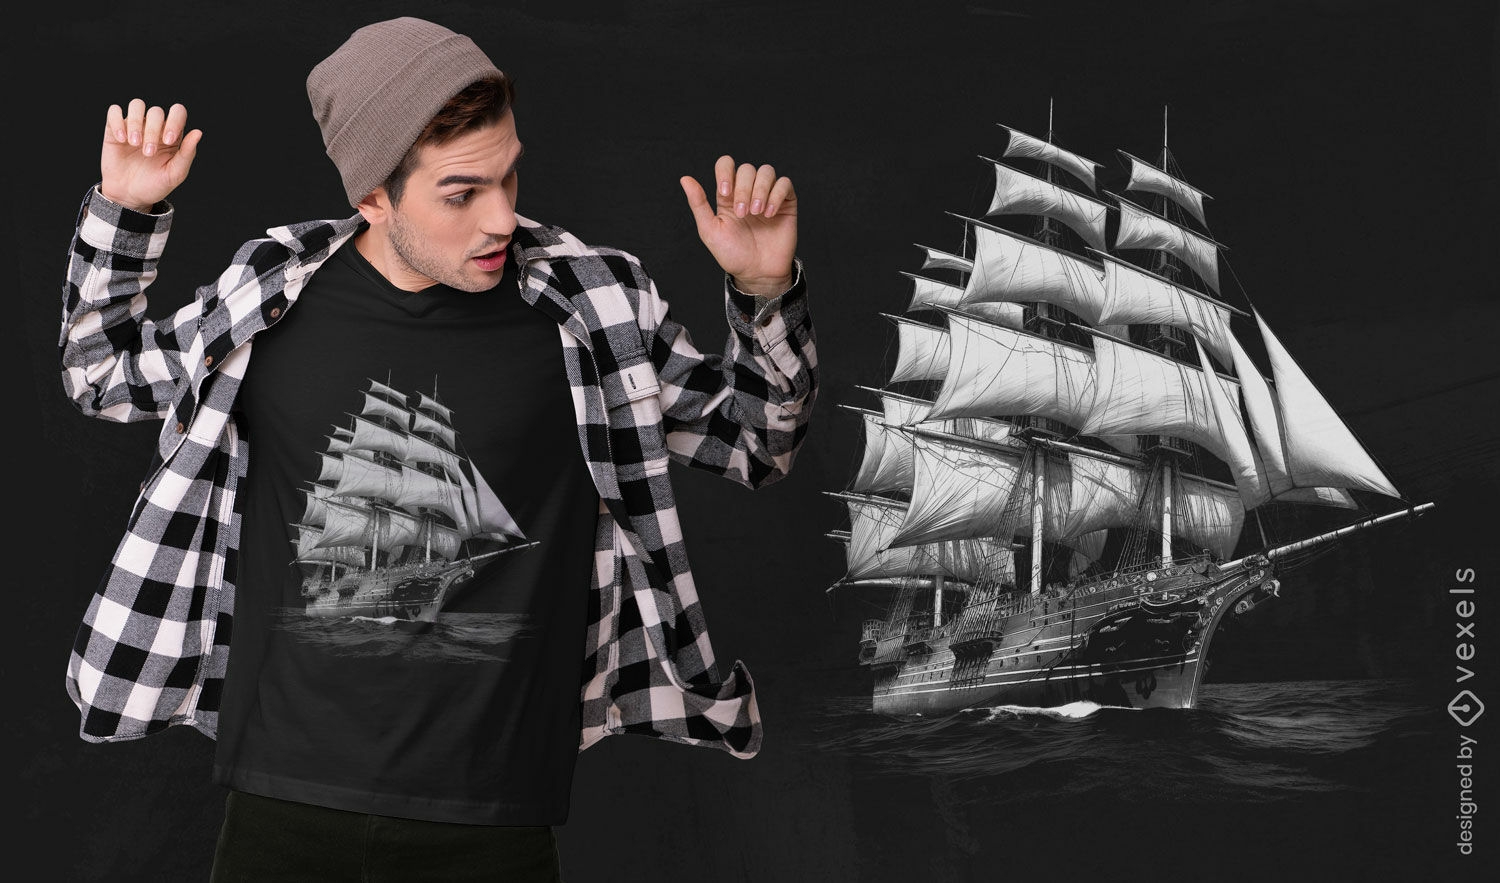 Nautical ship sketch t-shirt design